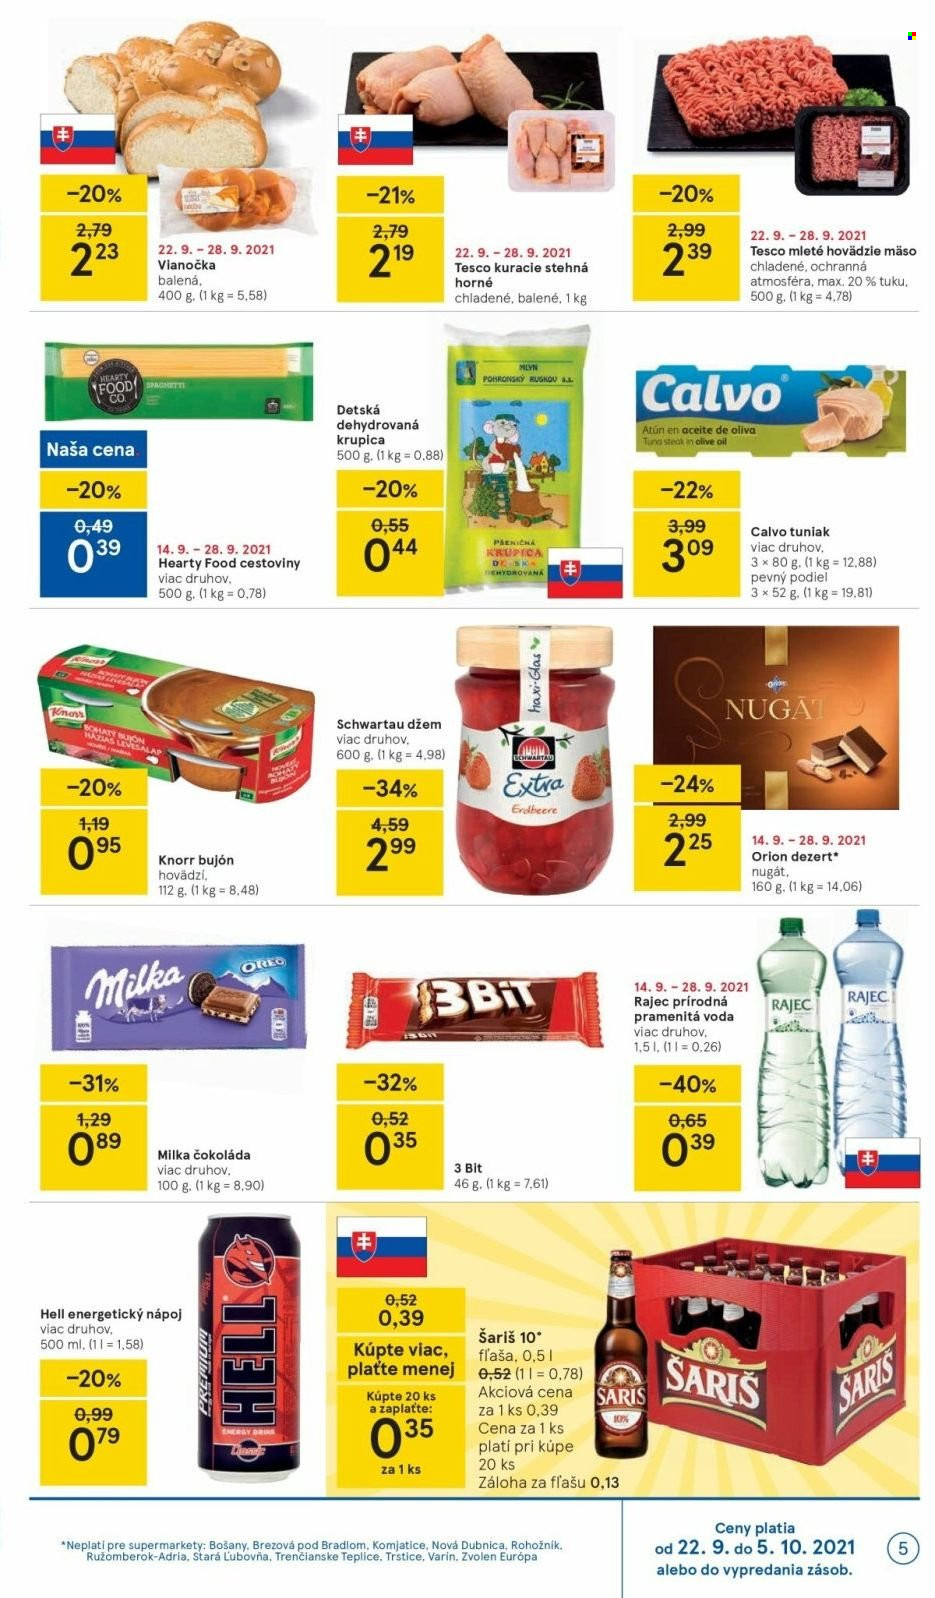 Leták TESCO supermarket - 22.9.2021 - 28.9.2021.